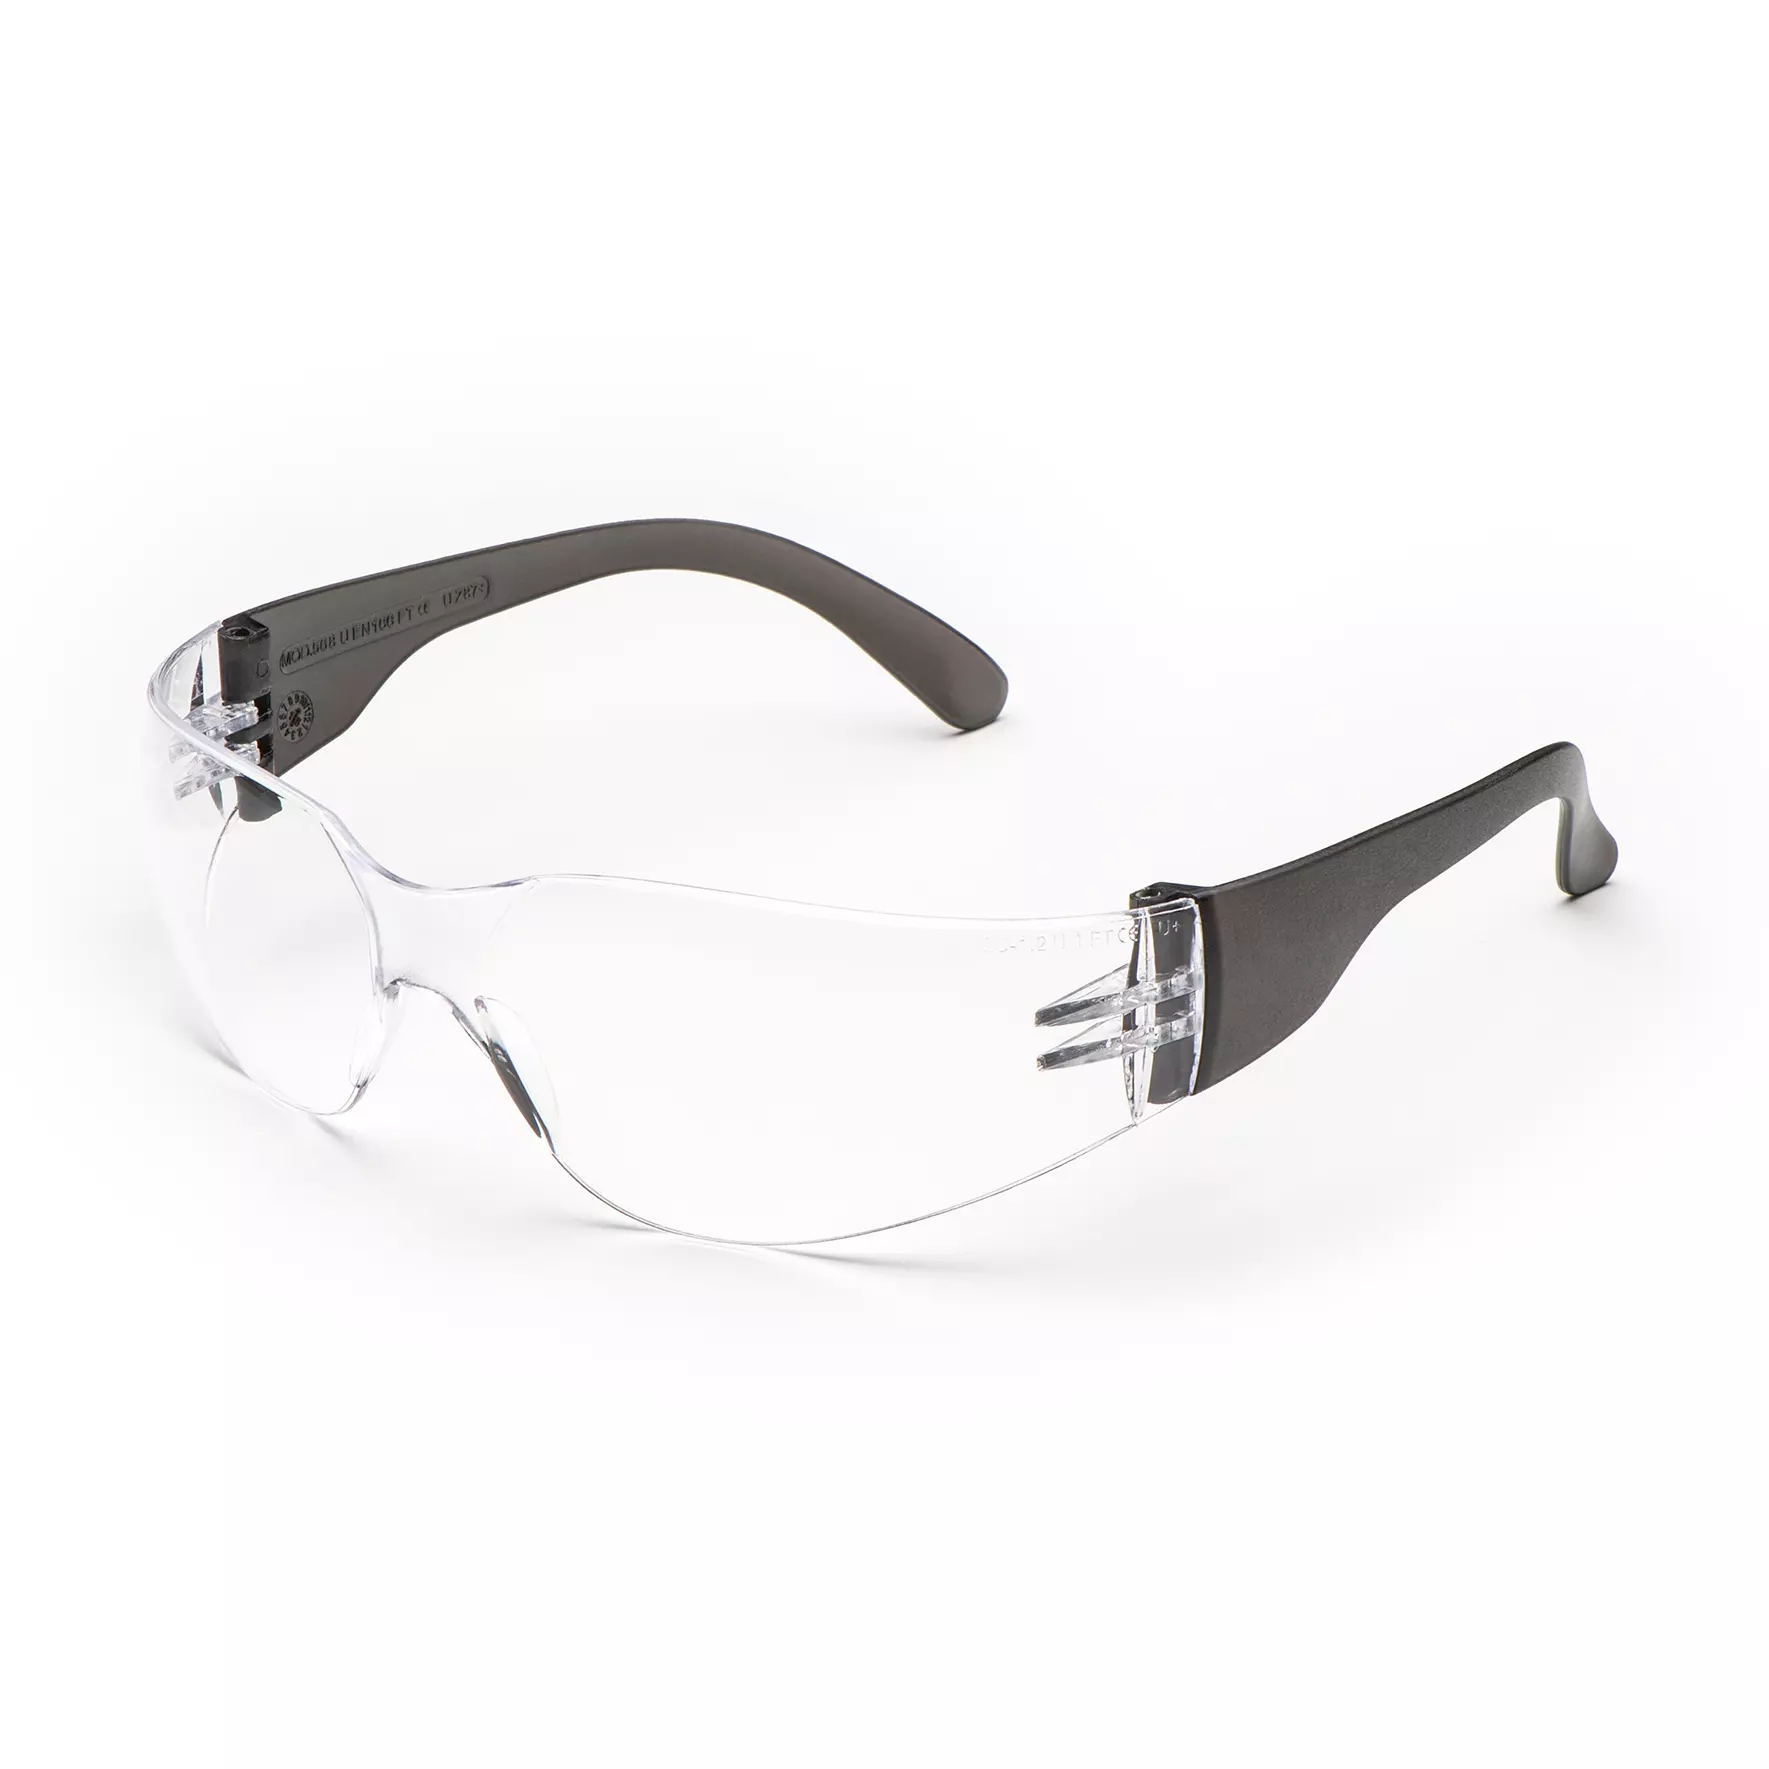 Arbeitsschutzbrille Ligero Up